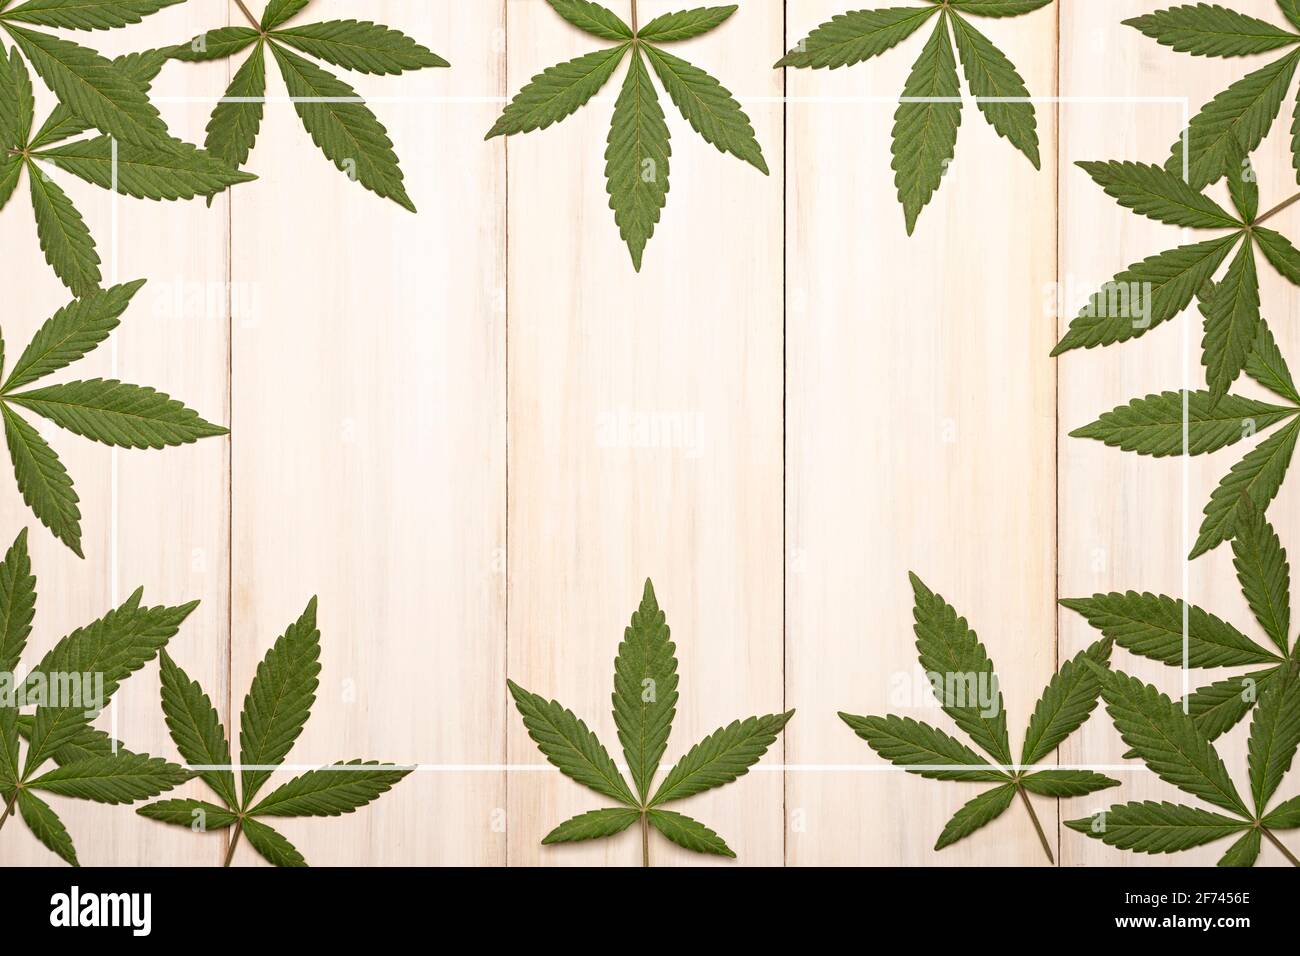 feuilles de cannabis sativa vertes fraîches (marijuana) encadrant un bois blanc rustique arrière-plan avec espace de copie Banque D'Images